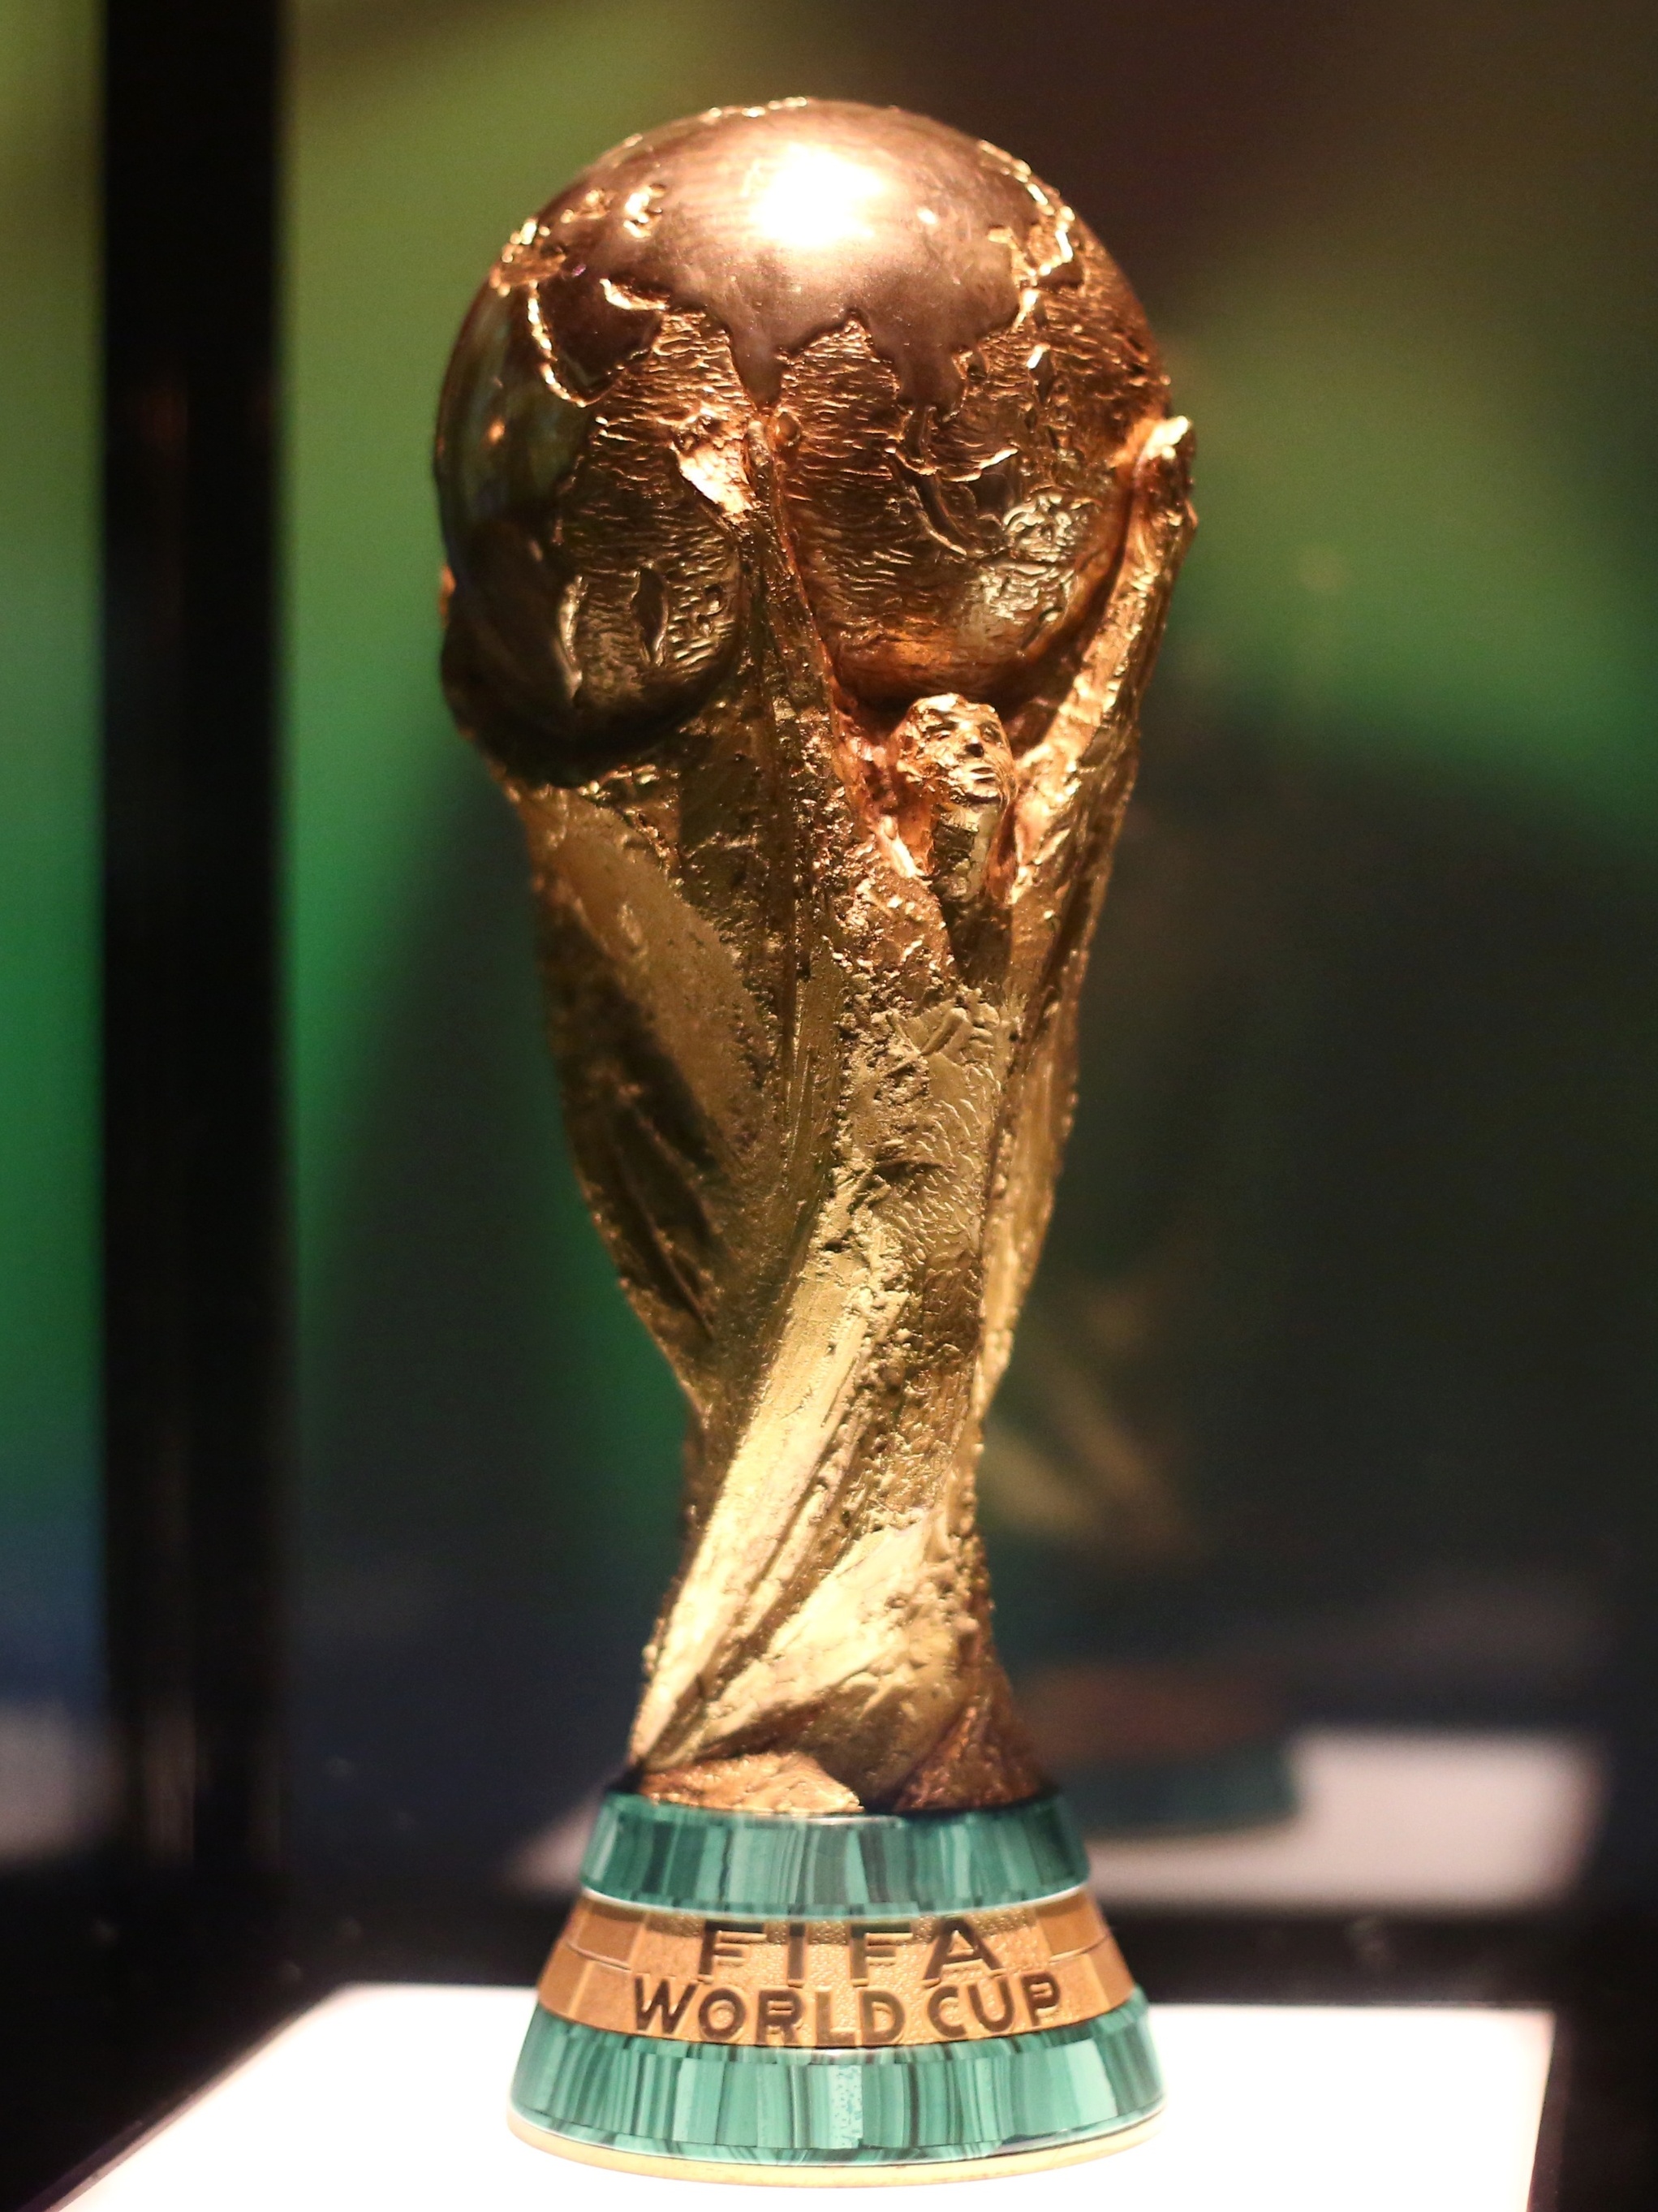 Saiba quais são as seleções campeãs mundiais da Copa do Mundo 2022